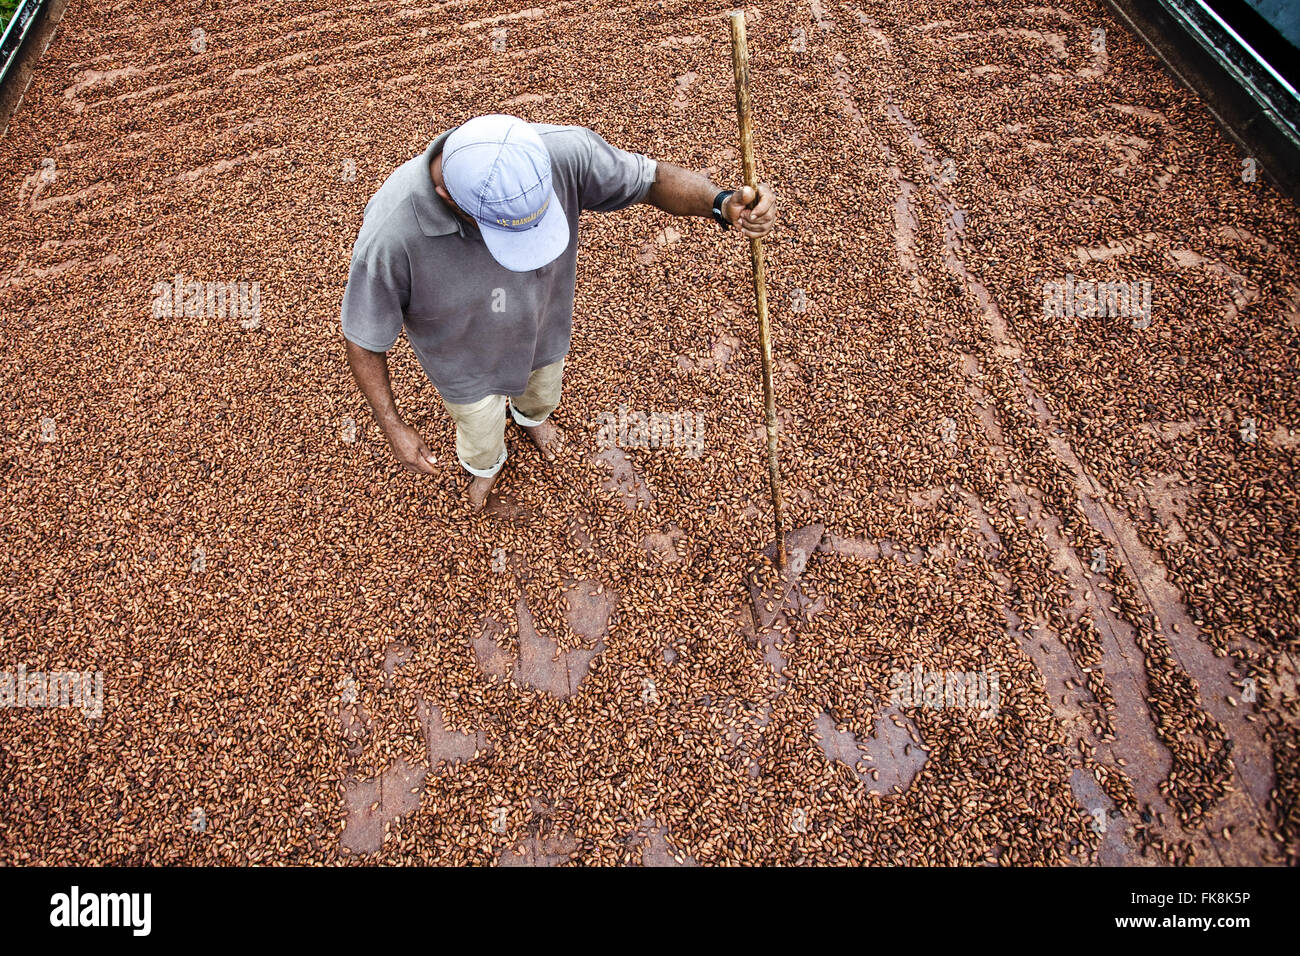 Tretender Kakao Zellstoff während des Prozesses der Trocknung und Fermentation Arbeiter Stockfoto